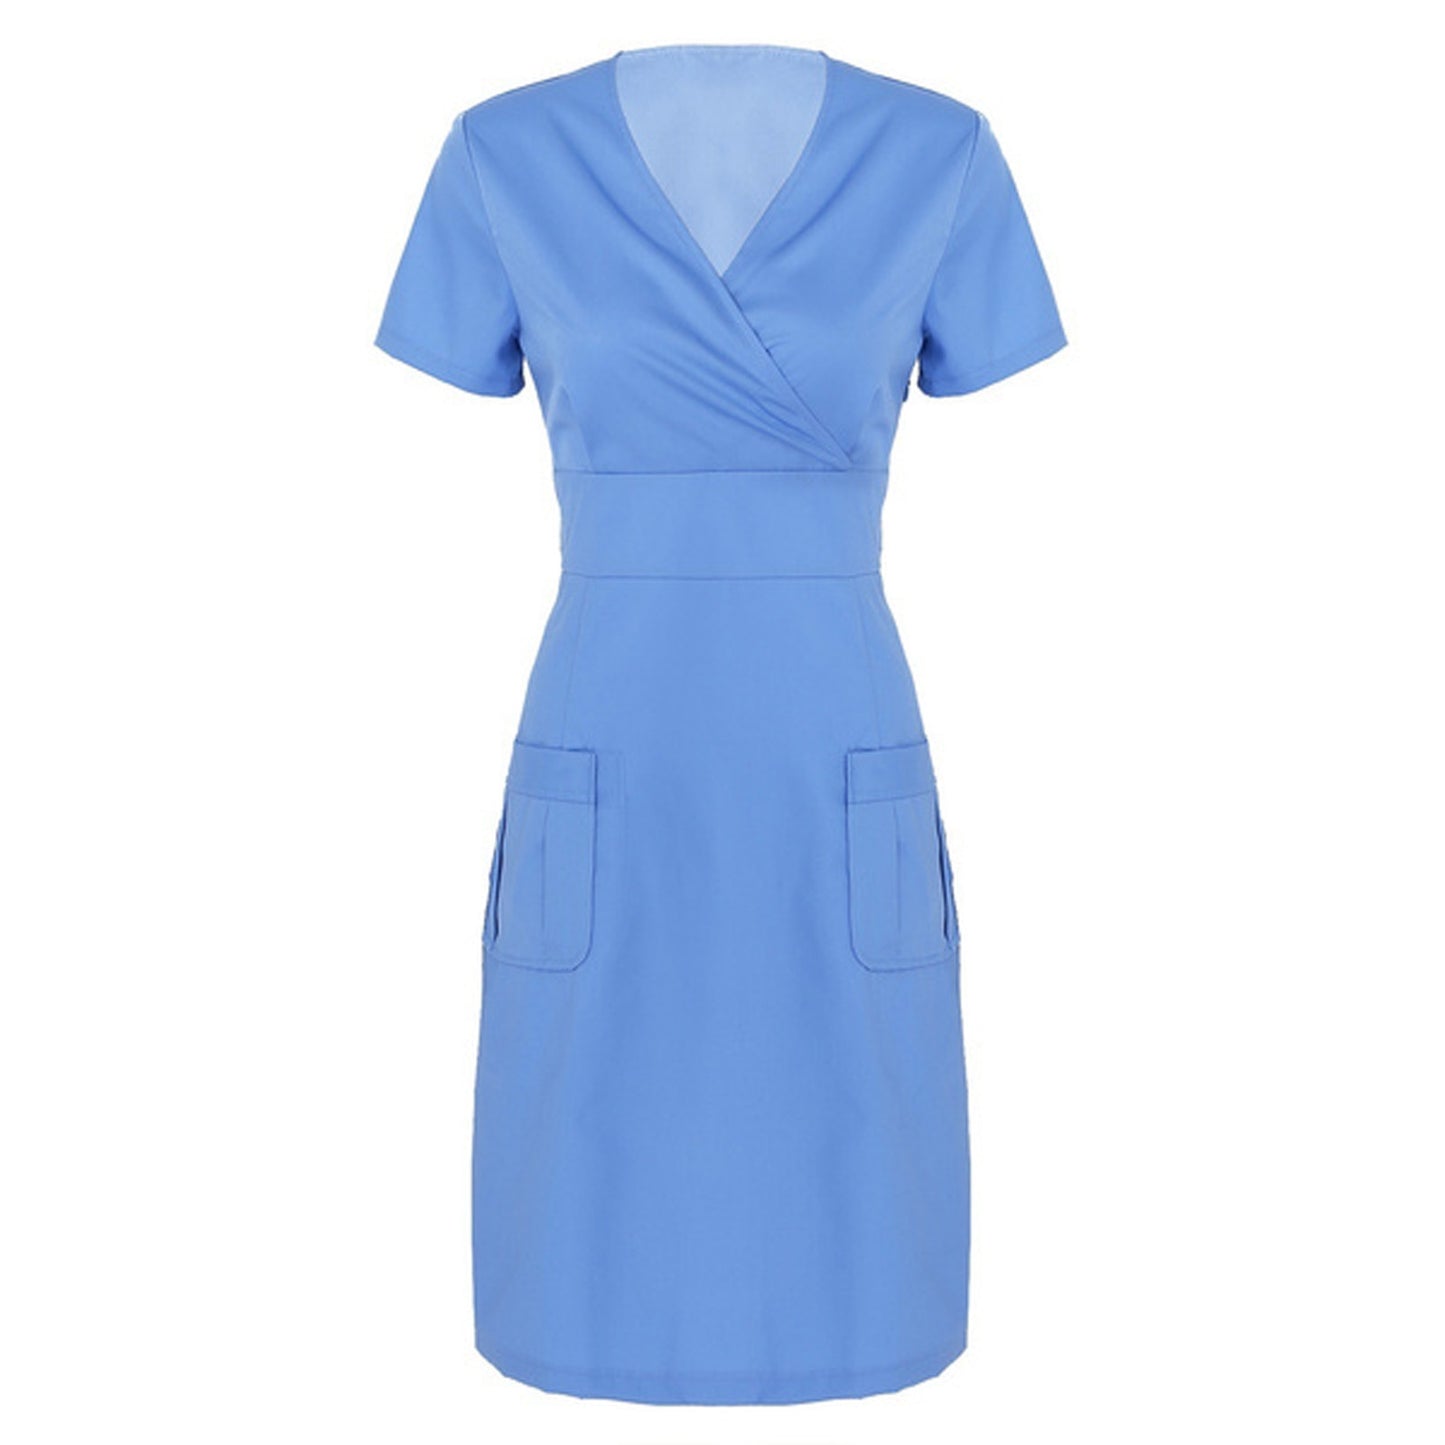 Women's Short-sleeved V-neck Nurses' Uniform Nurse Dress